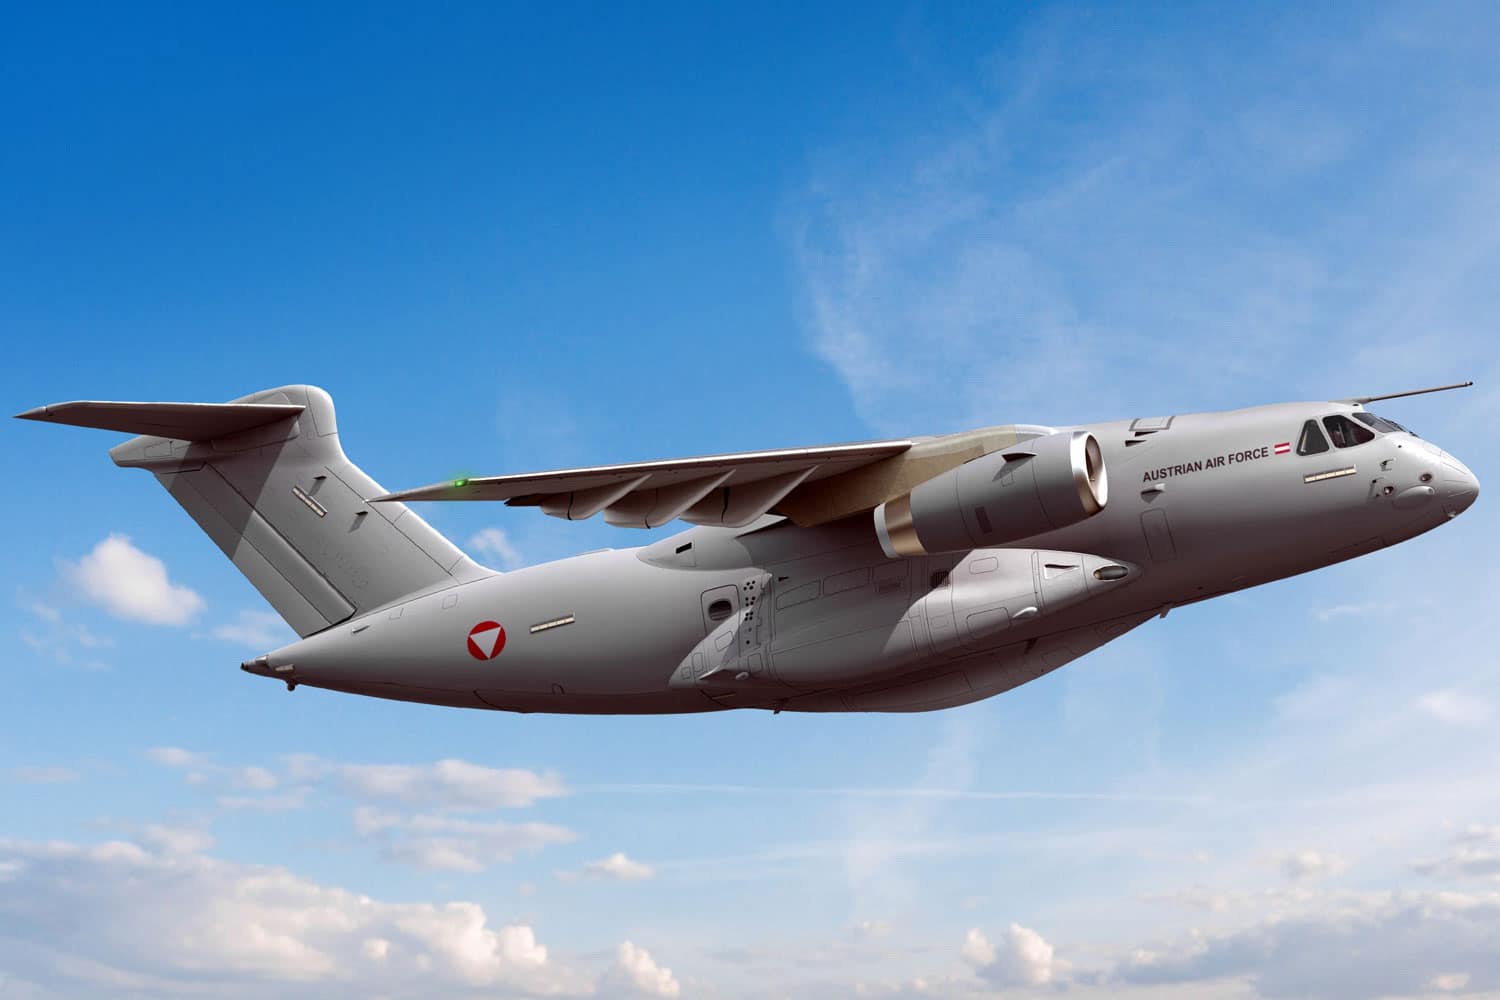 Áustria e Holanda comprarão nove C-390 em parceria. Imagem: Embraer/Divulgação.